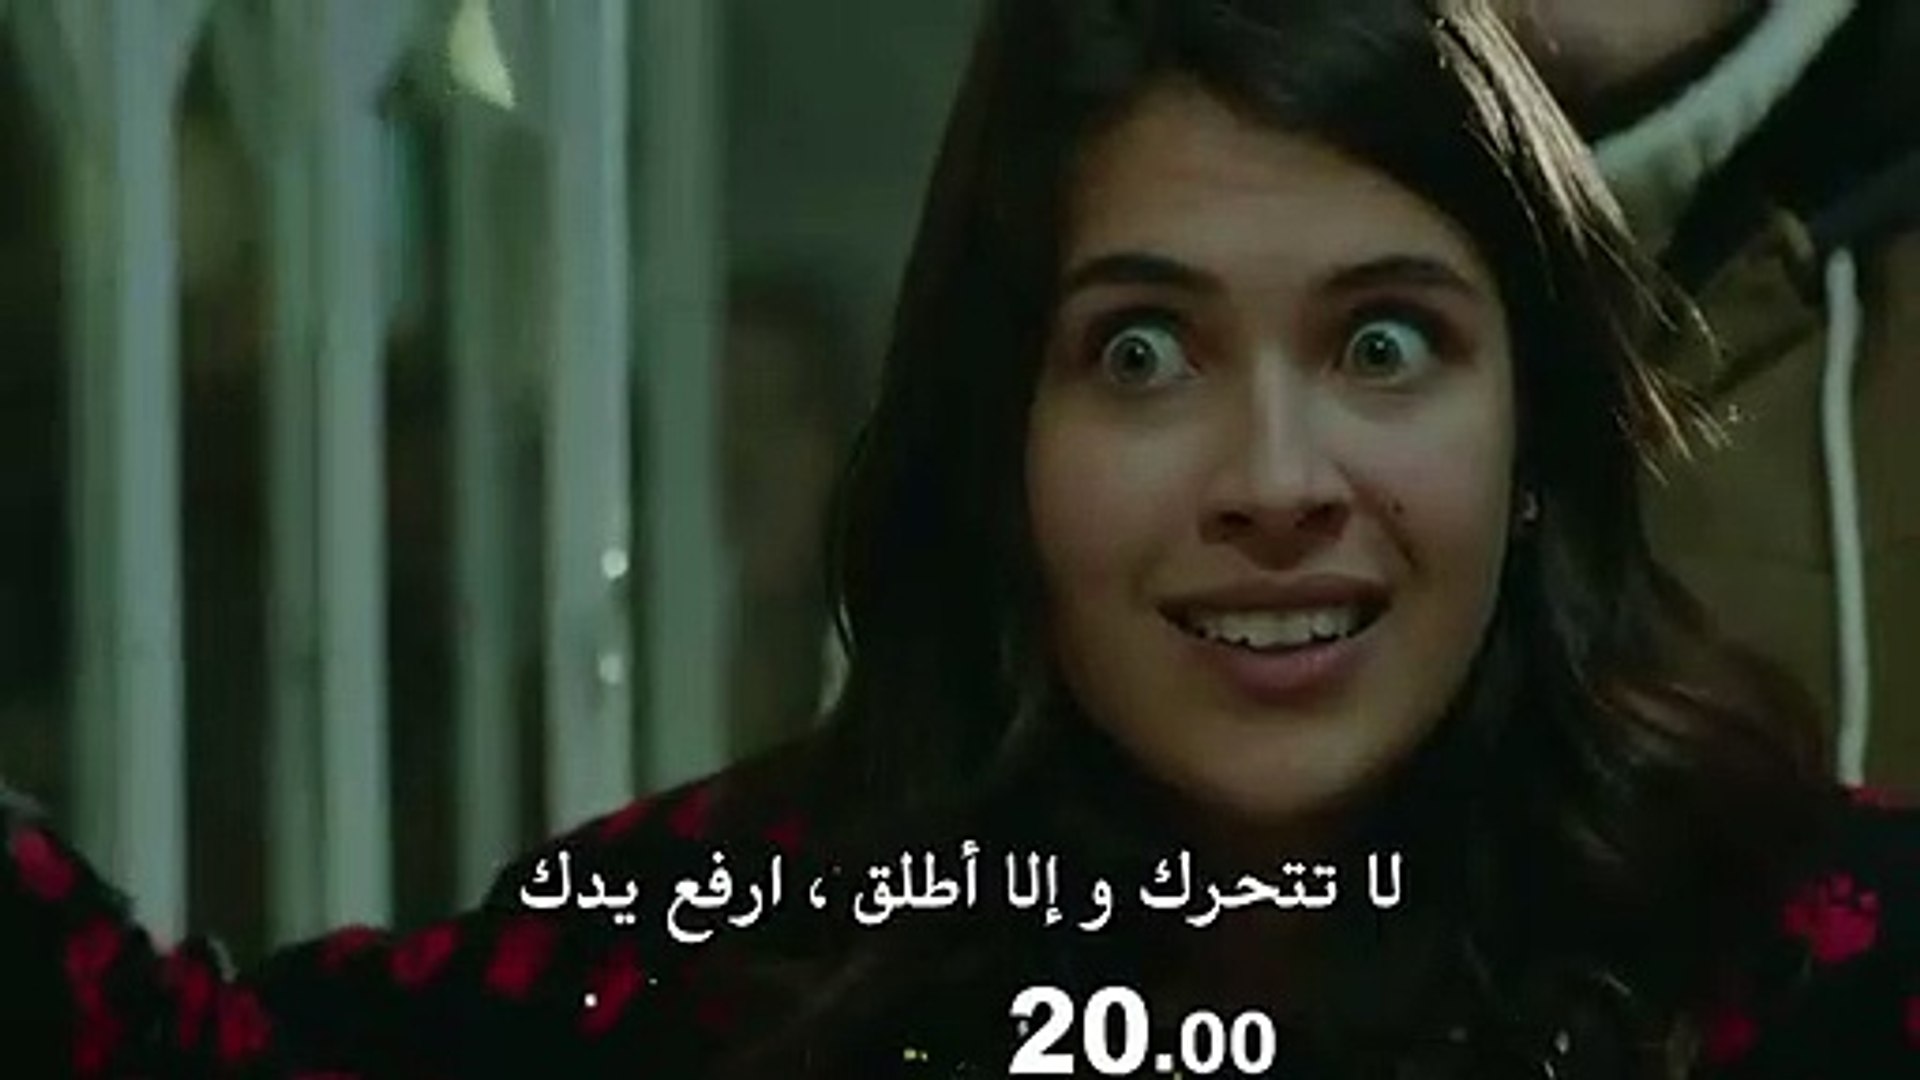 مسلسل الأزهار الحزينة 3 الموسم الثالث مترجم للعربية إعلان الحلقة 16 Video Dailymotion